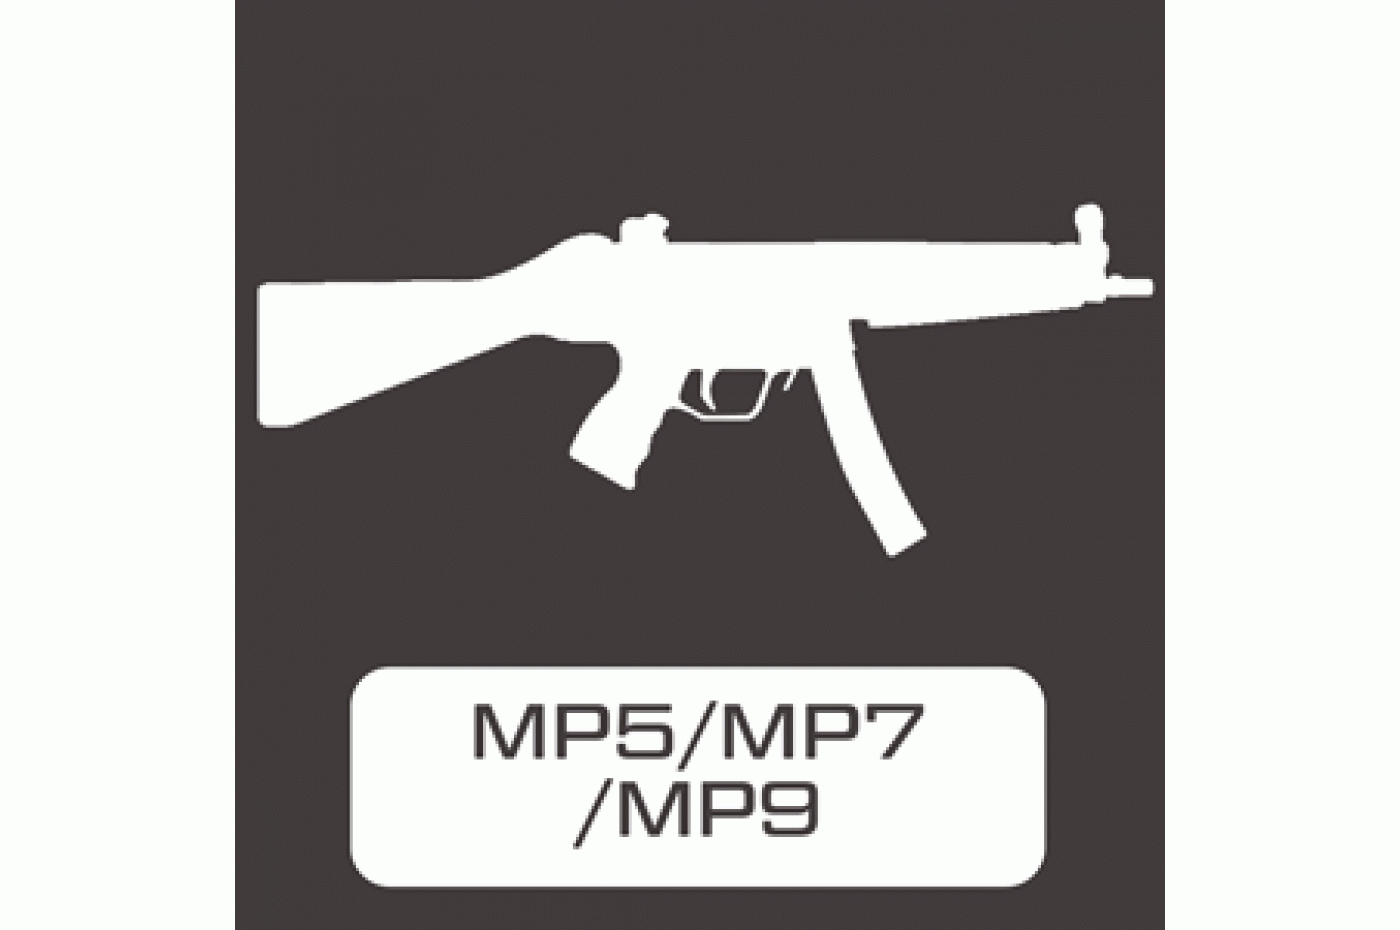 MP5 / MP7 / MP9